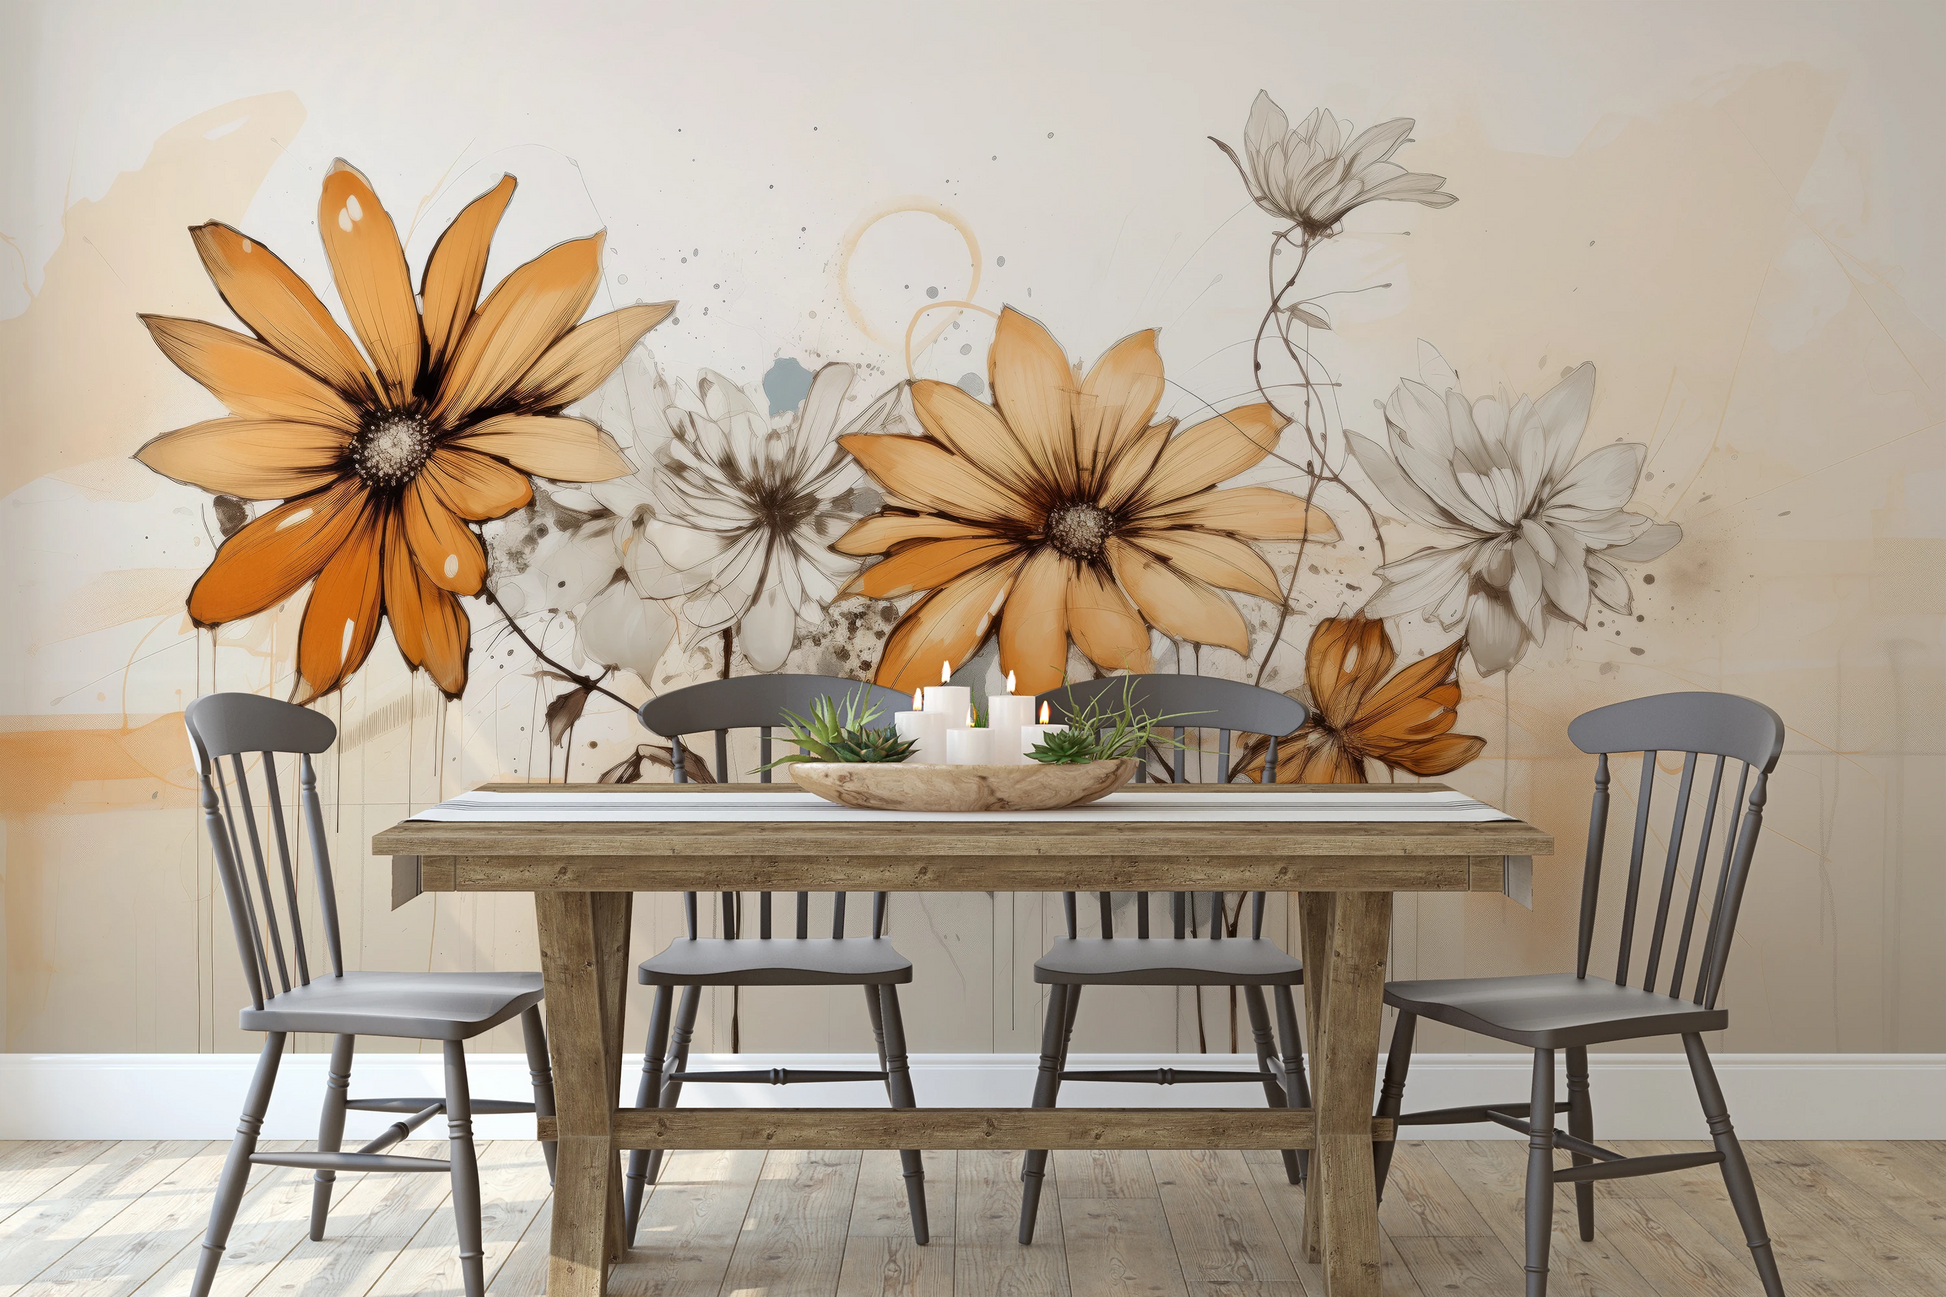 Fototapeta o nazwie Abstract Florals użyta w aranzacji wnętrza.